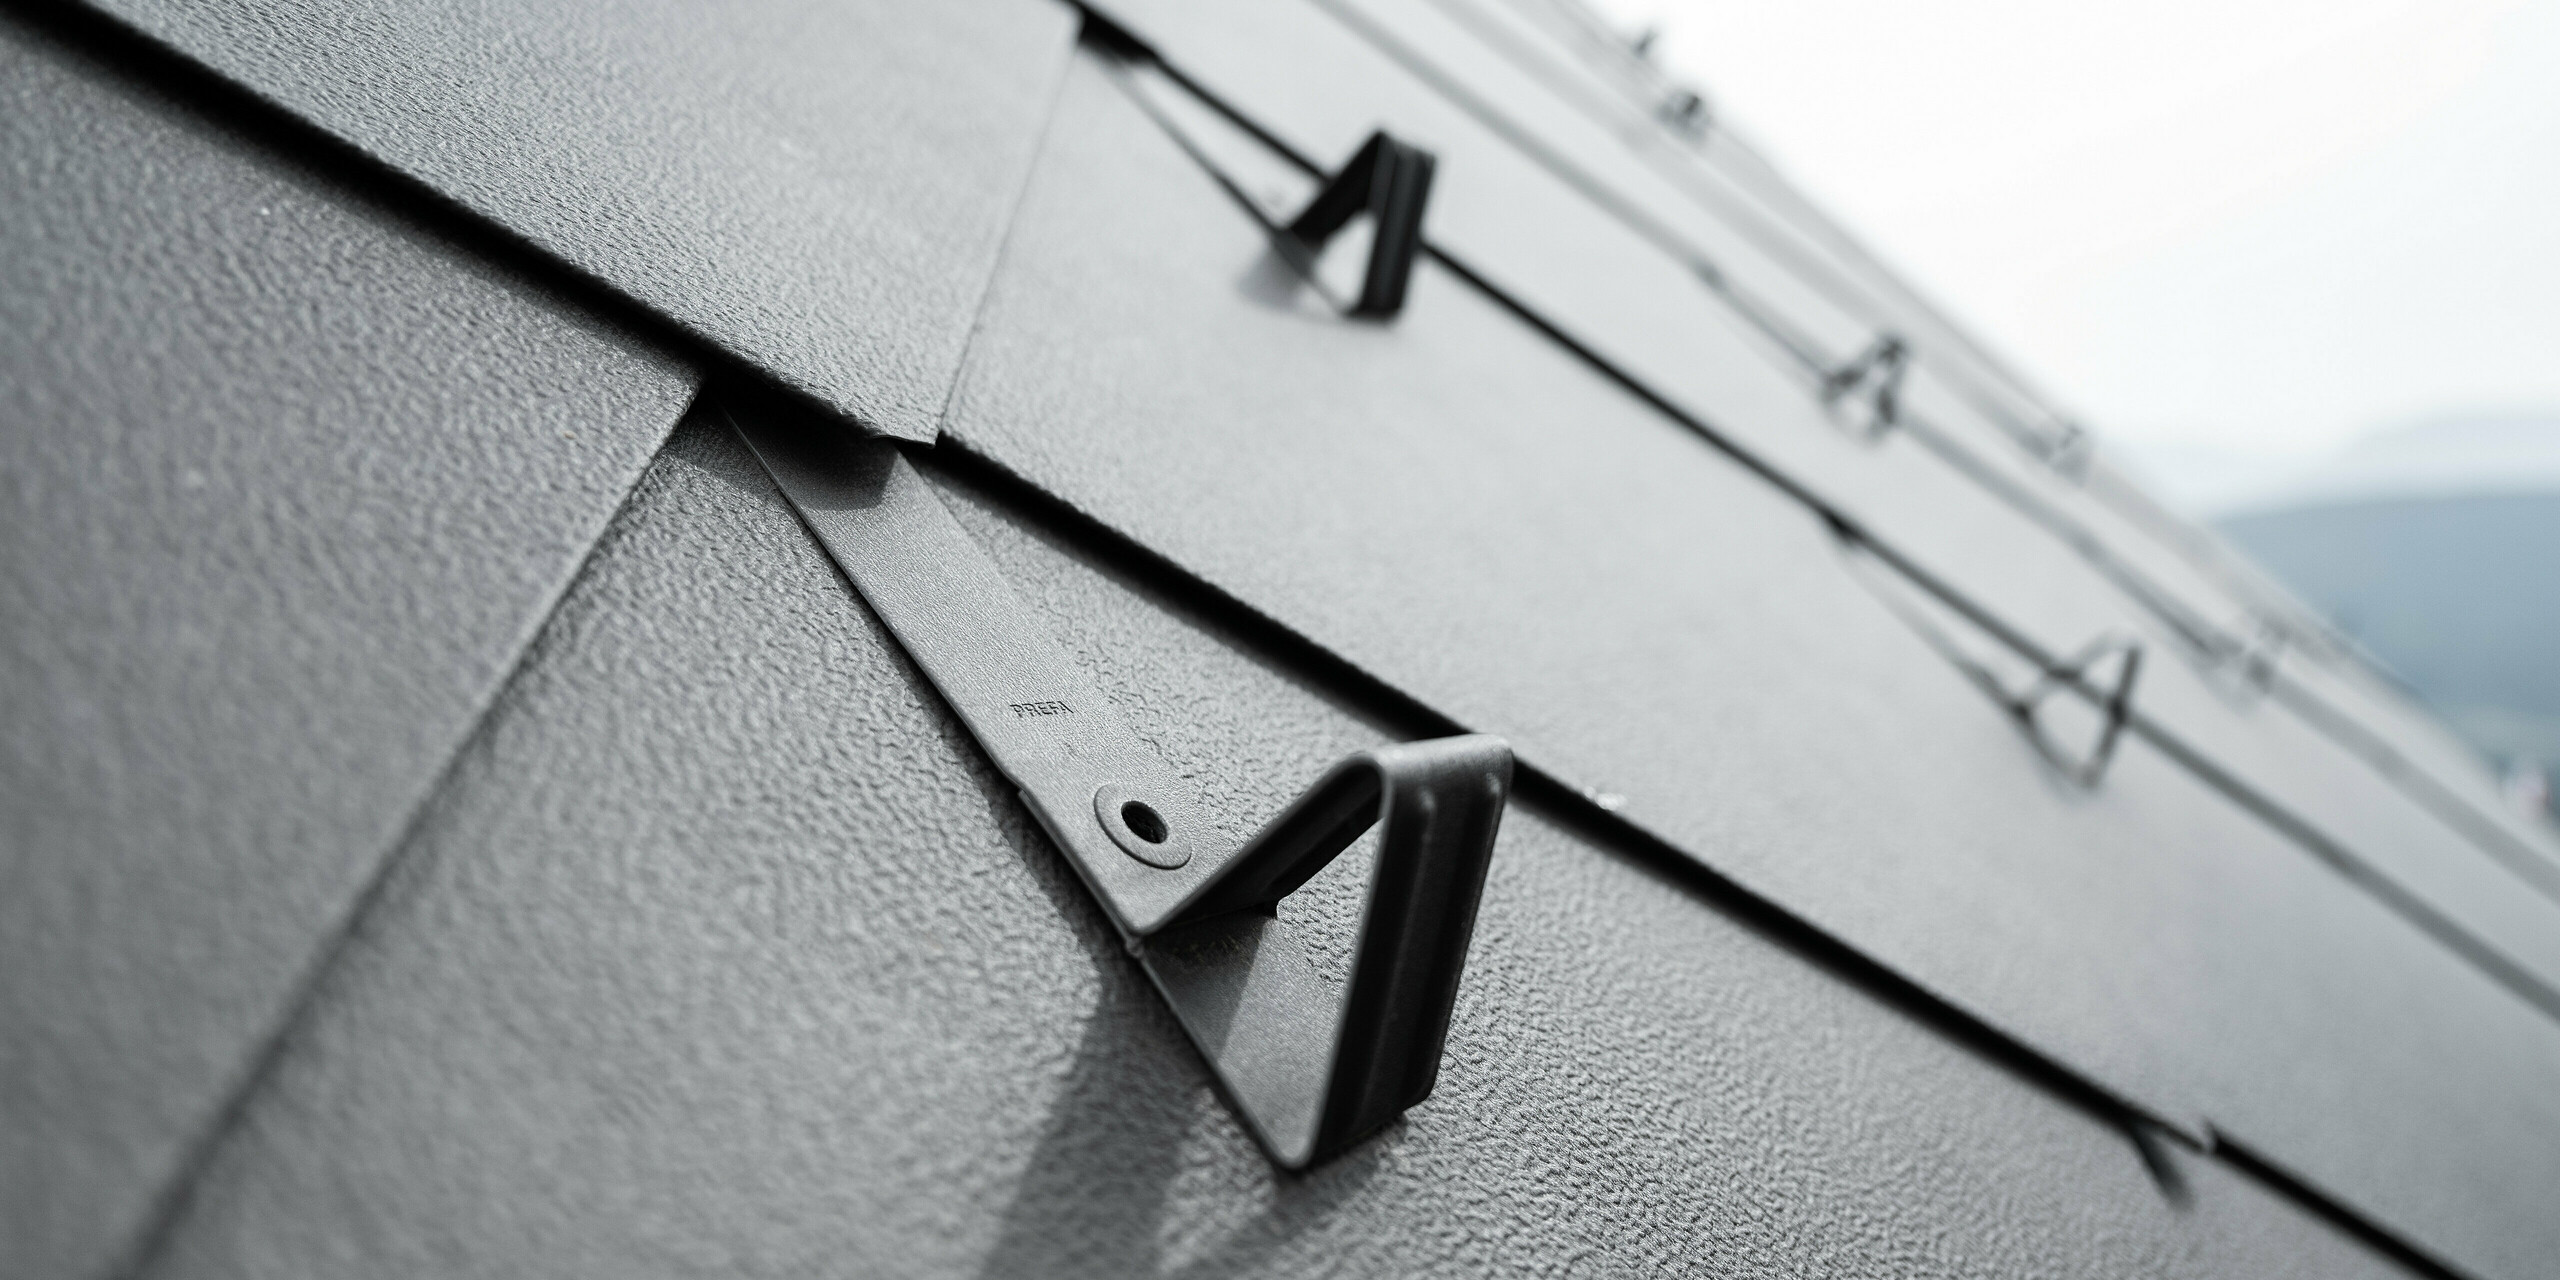 Detailaufnahme eines Aluminiumdaches aus PREFA Dachraut 44x44 in der Farbe P.10 Braun, ausgestattet mit einem funktionalen Schneeschutzsystem. Das Bild zeigt die strukturierte Oberfläche der Rauten sowie die präzise Befestigung der Schneeschutzhalterungen, die nahtlos in das Dachdesign integriert sind und für zusätzliche Sicherheit während der Wintermonate sorgen. Die robusten Schneestopper sind gleichmäßig angeordnet und sorgen dadurch für ein harmonisches Gesamtbild.